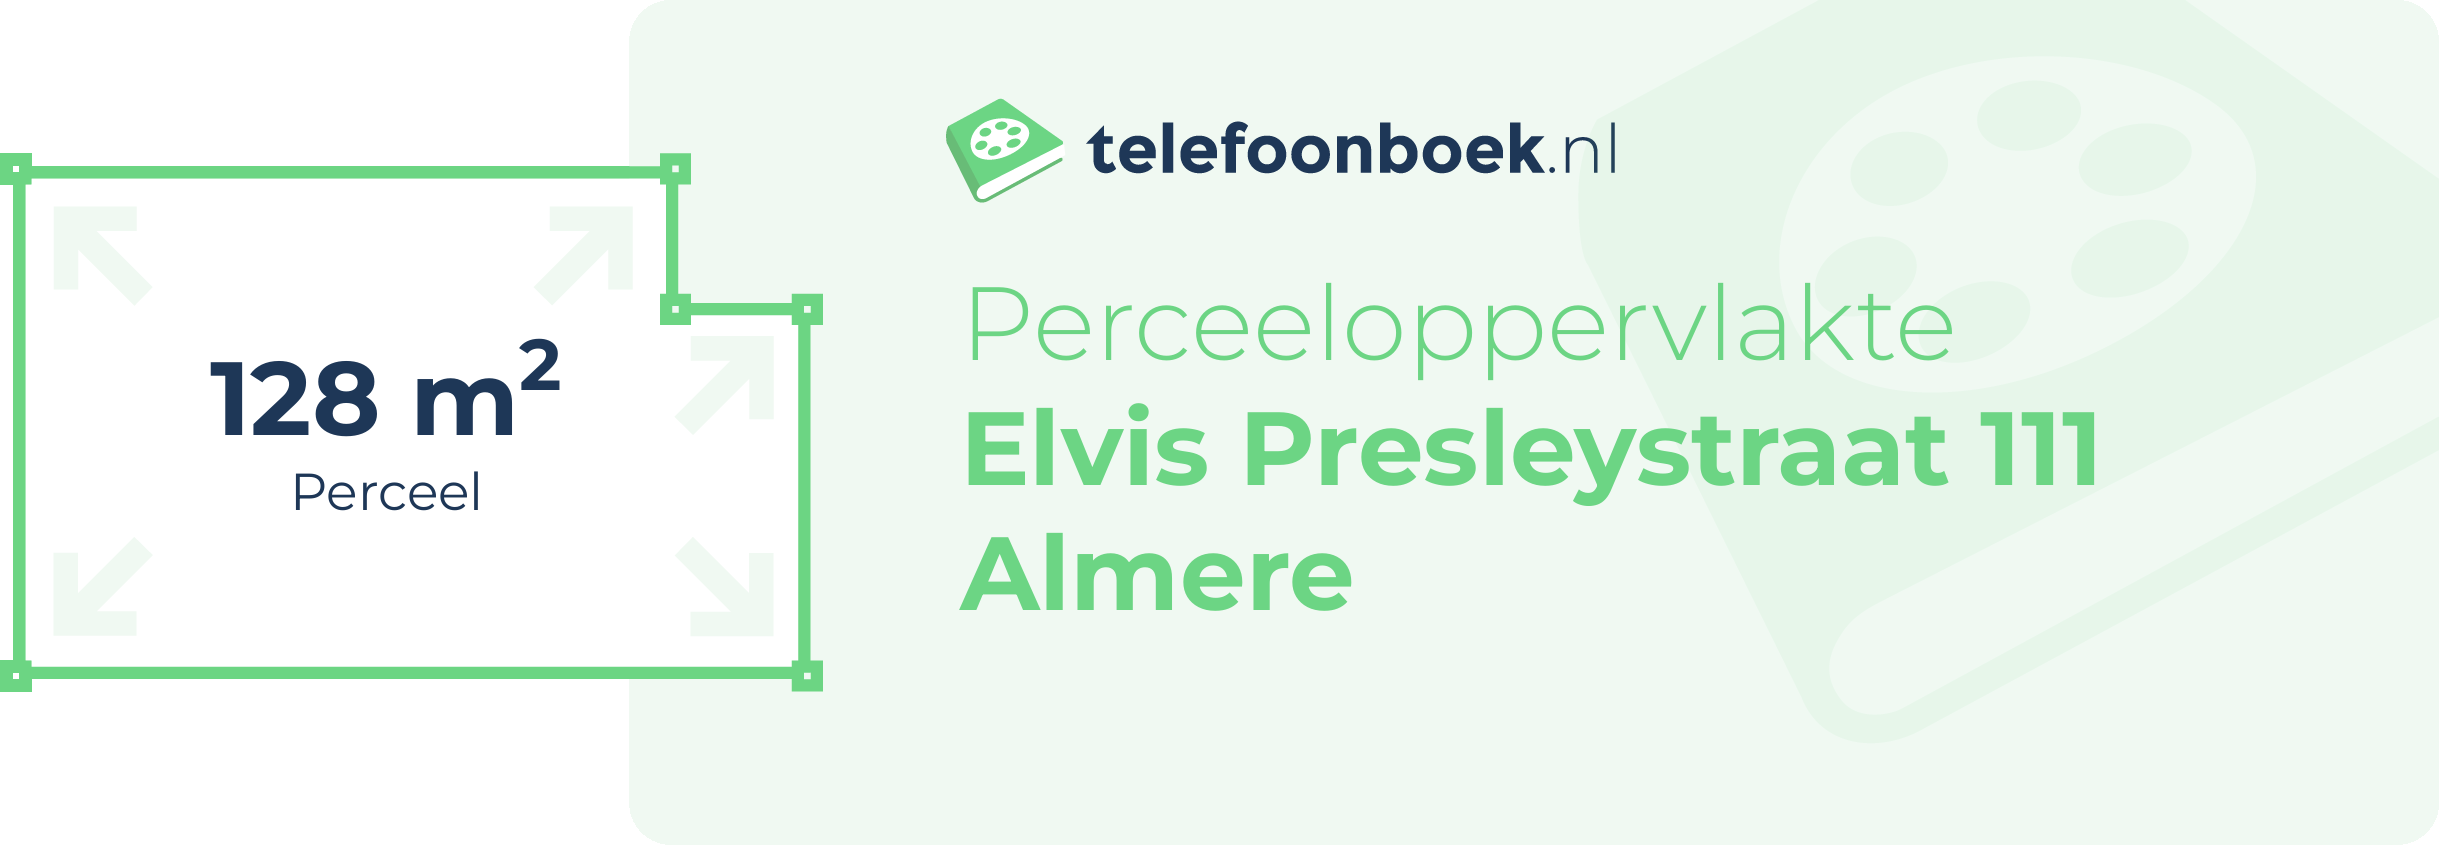 Perceeloppervlakte Elvis Presleystraat 111 Almere